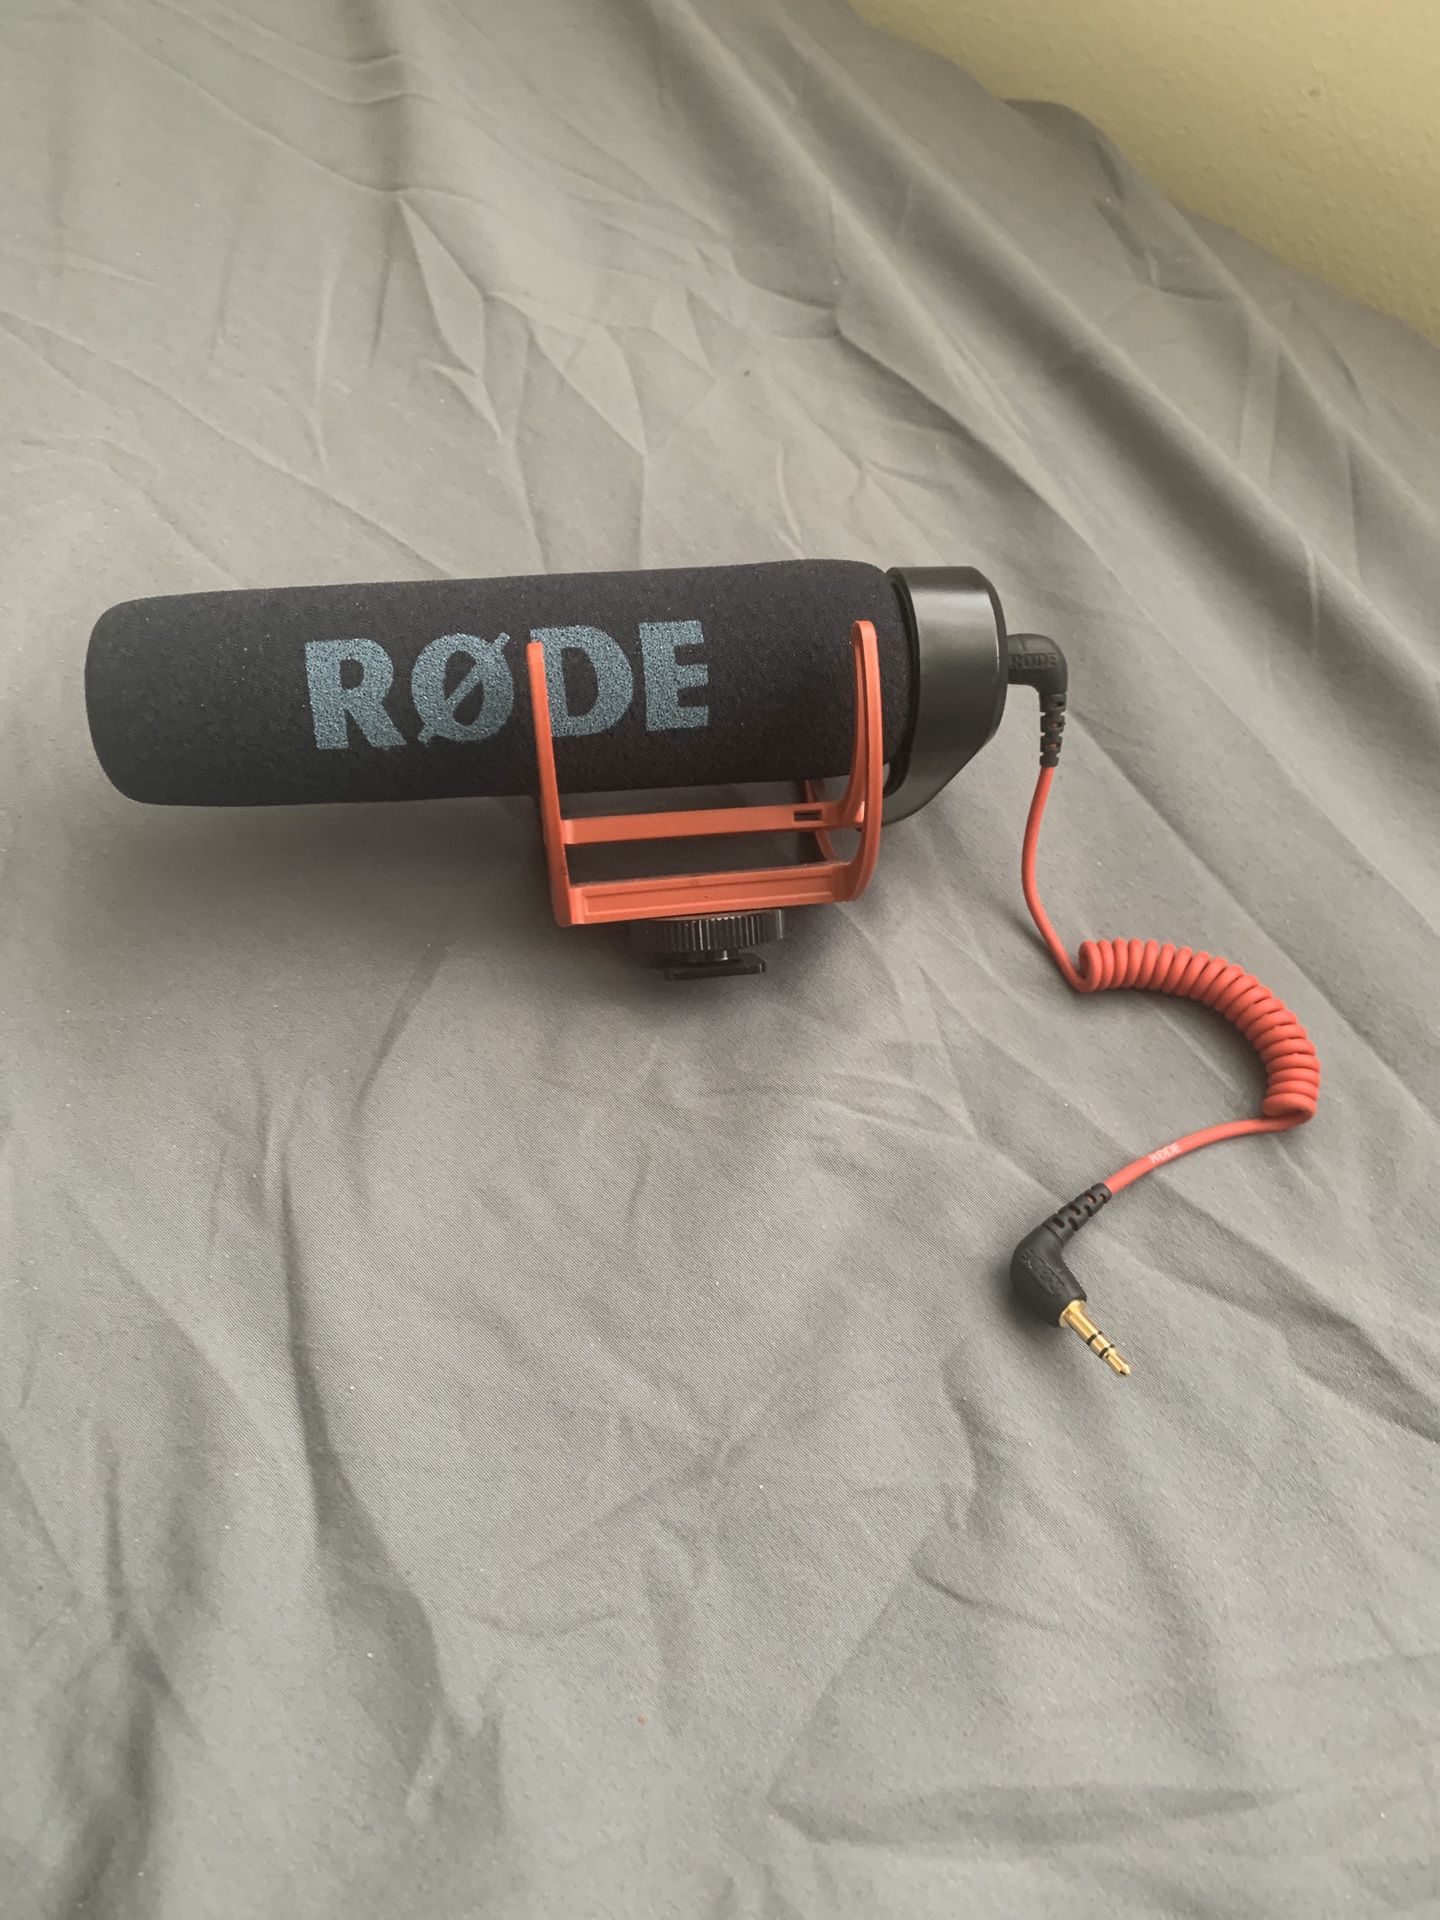 RODE - VideoMic GO Camera Microphone